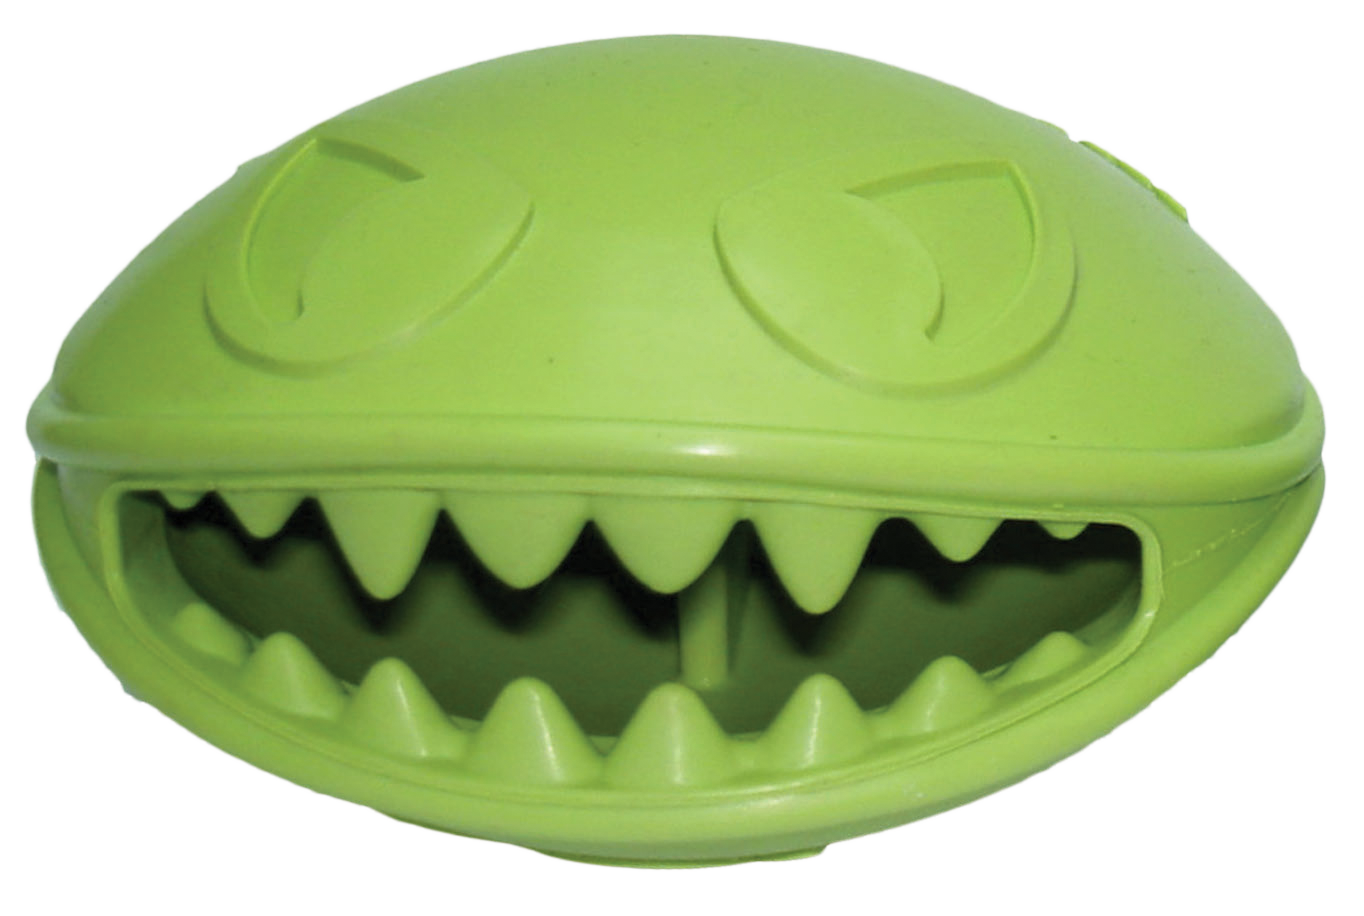 Jolly Pets- Monster Mouth 7,5cm - (JOLL081)